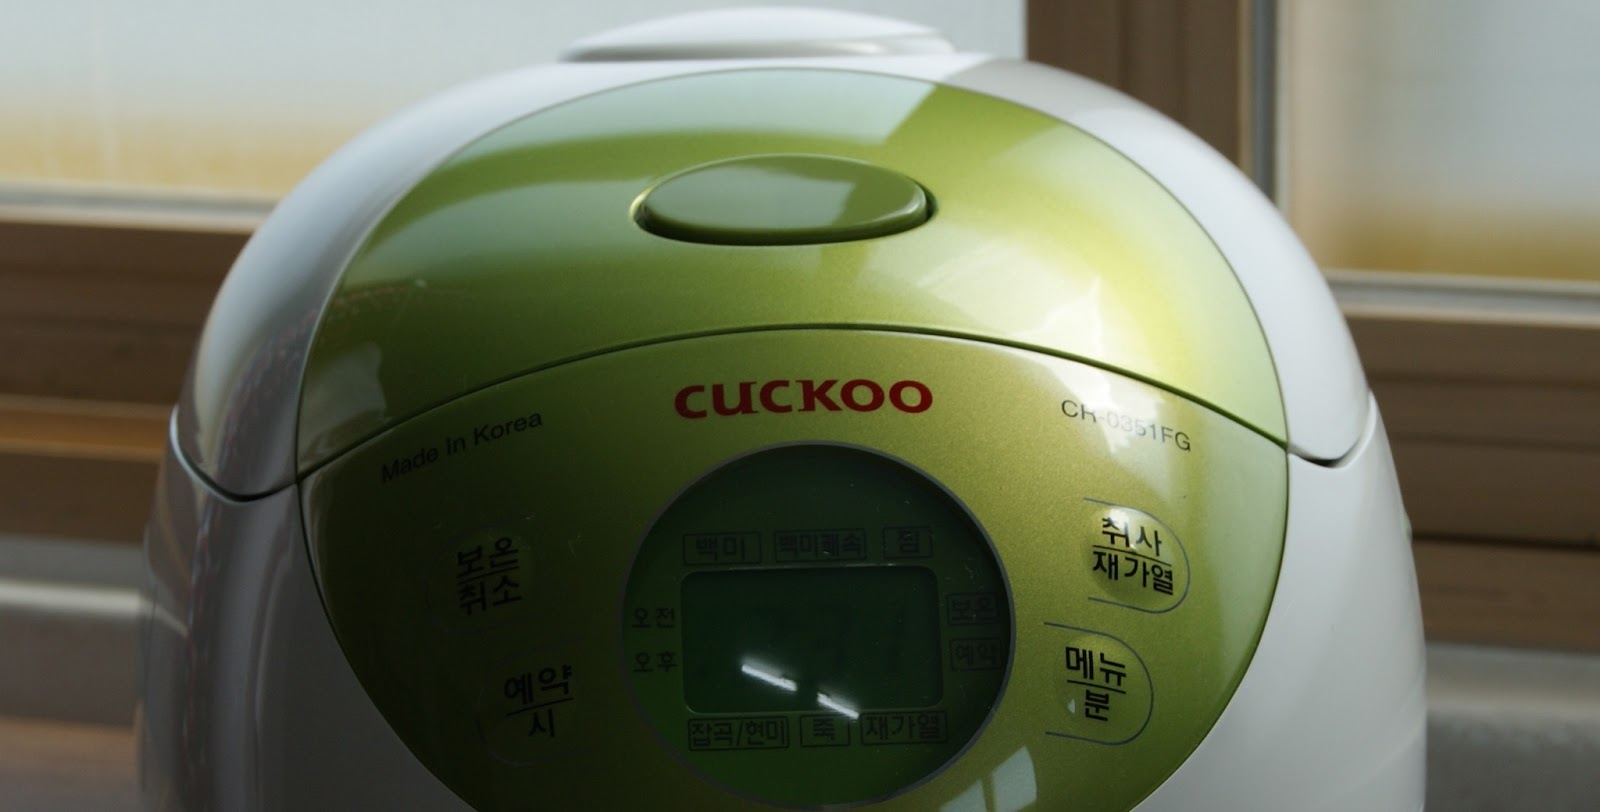 Touring Korea: Cuckoo Electric Rice Cooker CR-0352FR / CR-0351FG